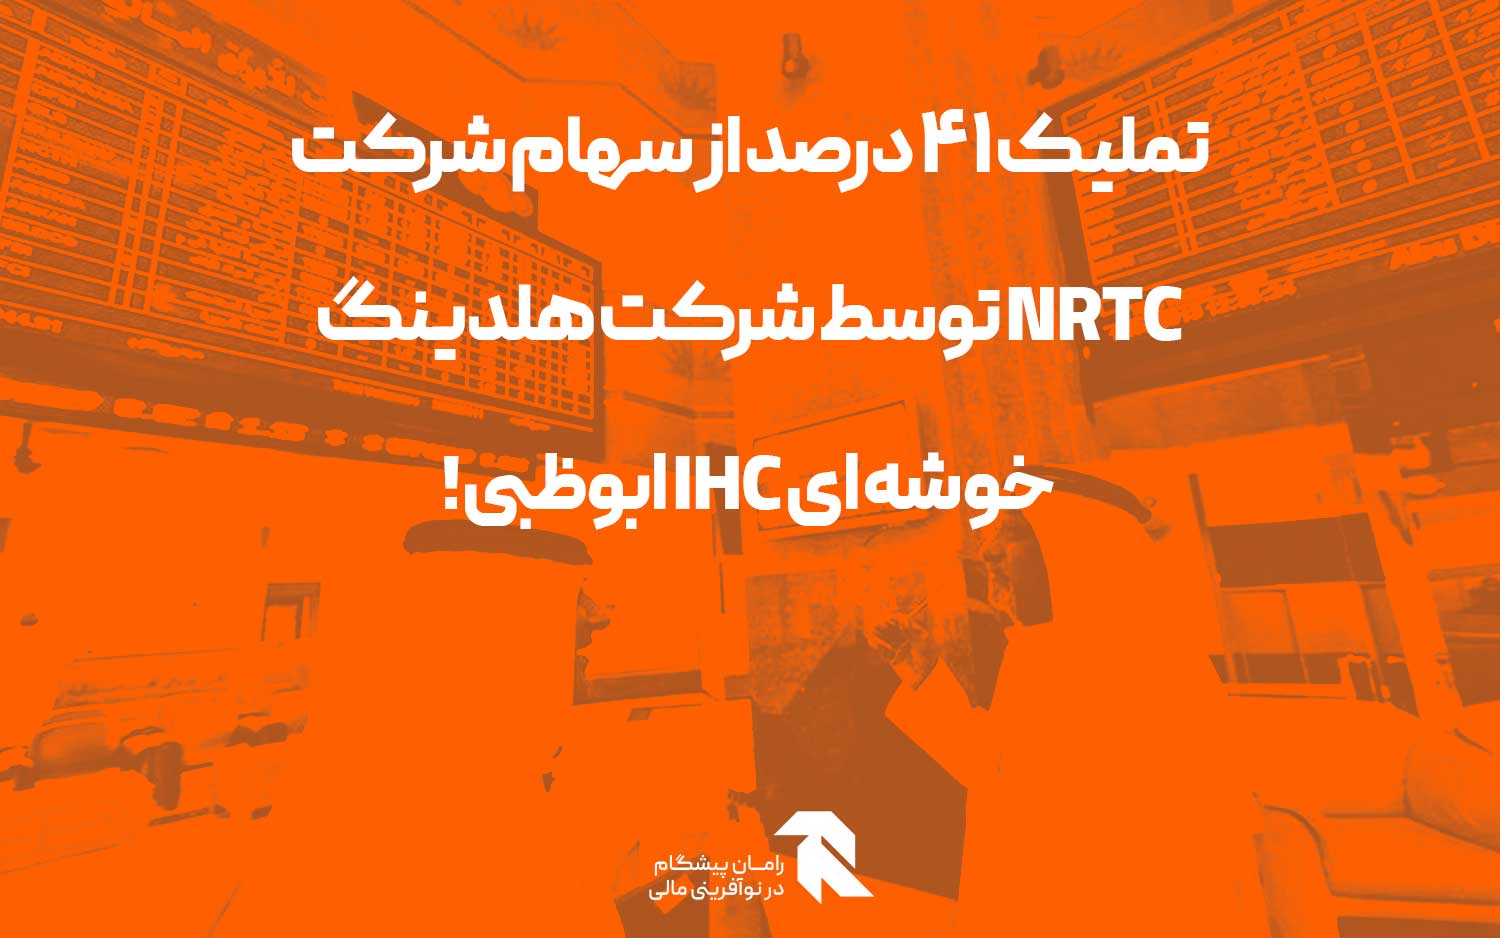 تملیک 41 درصد از سهام شرکت NRTC توسط شرکت هلدینگ خوشه ای IHC ابوظبی!